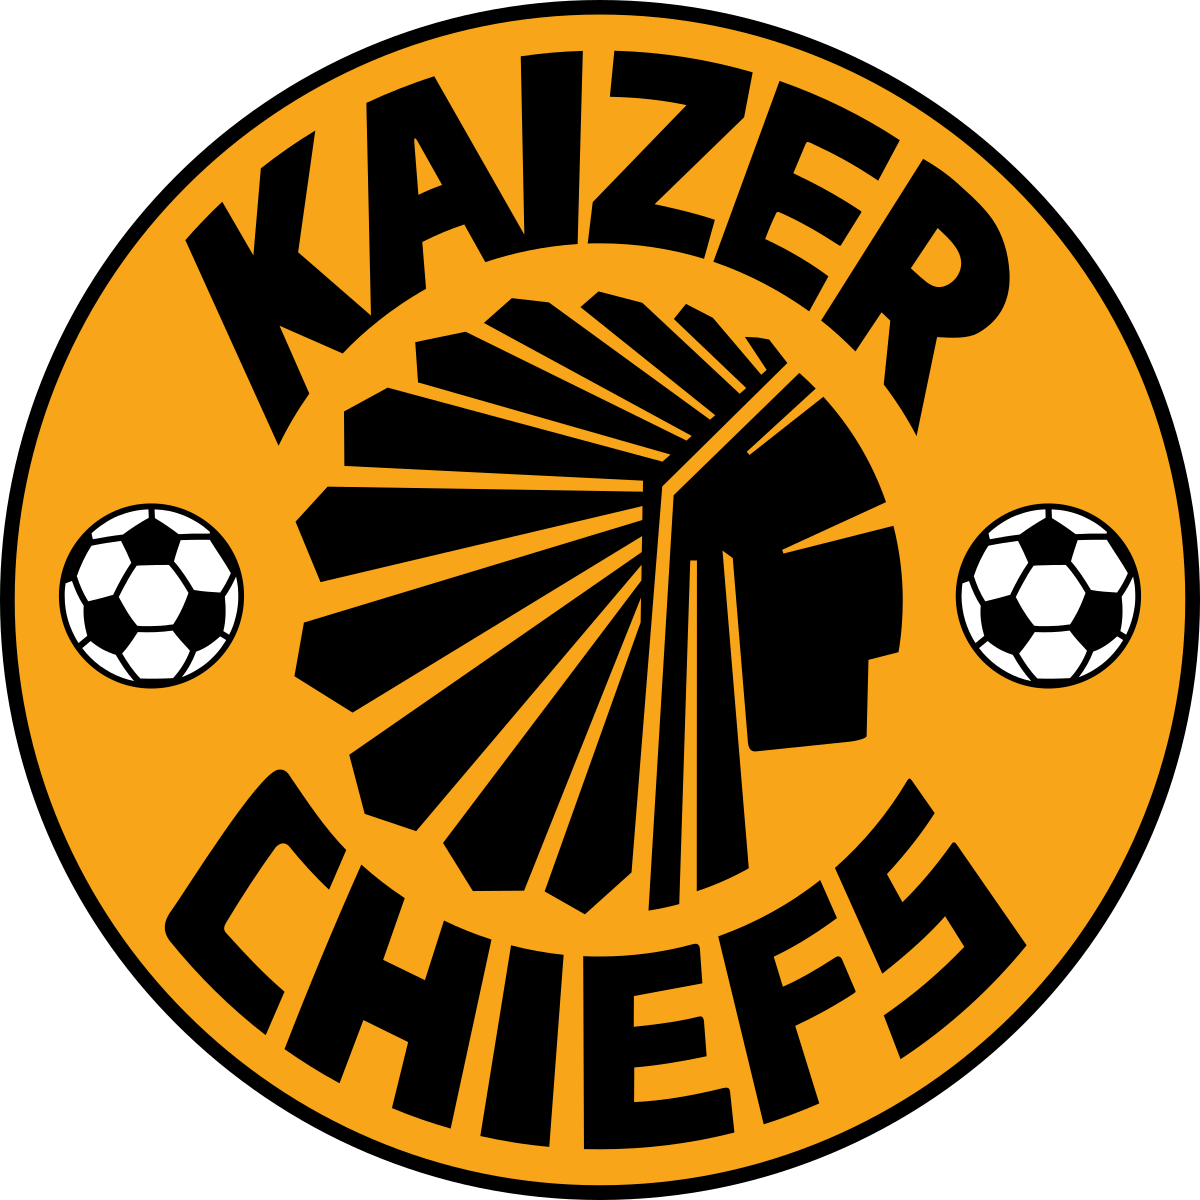 Kaizer Chief